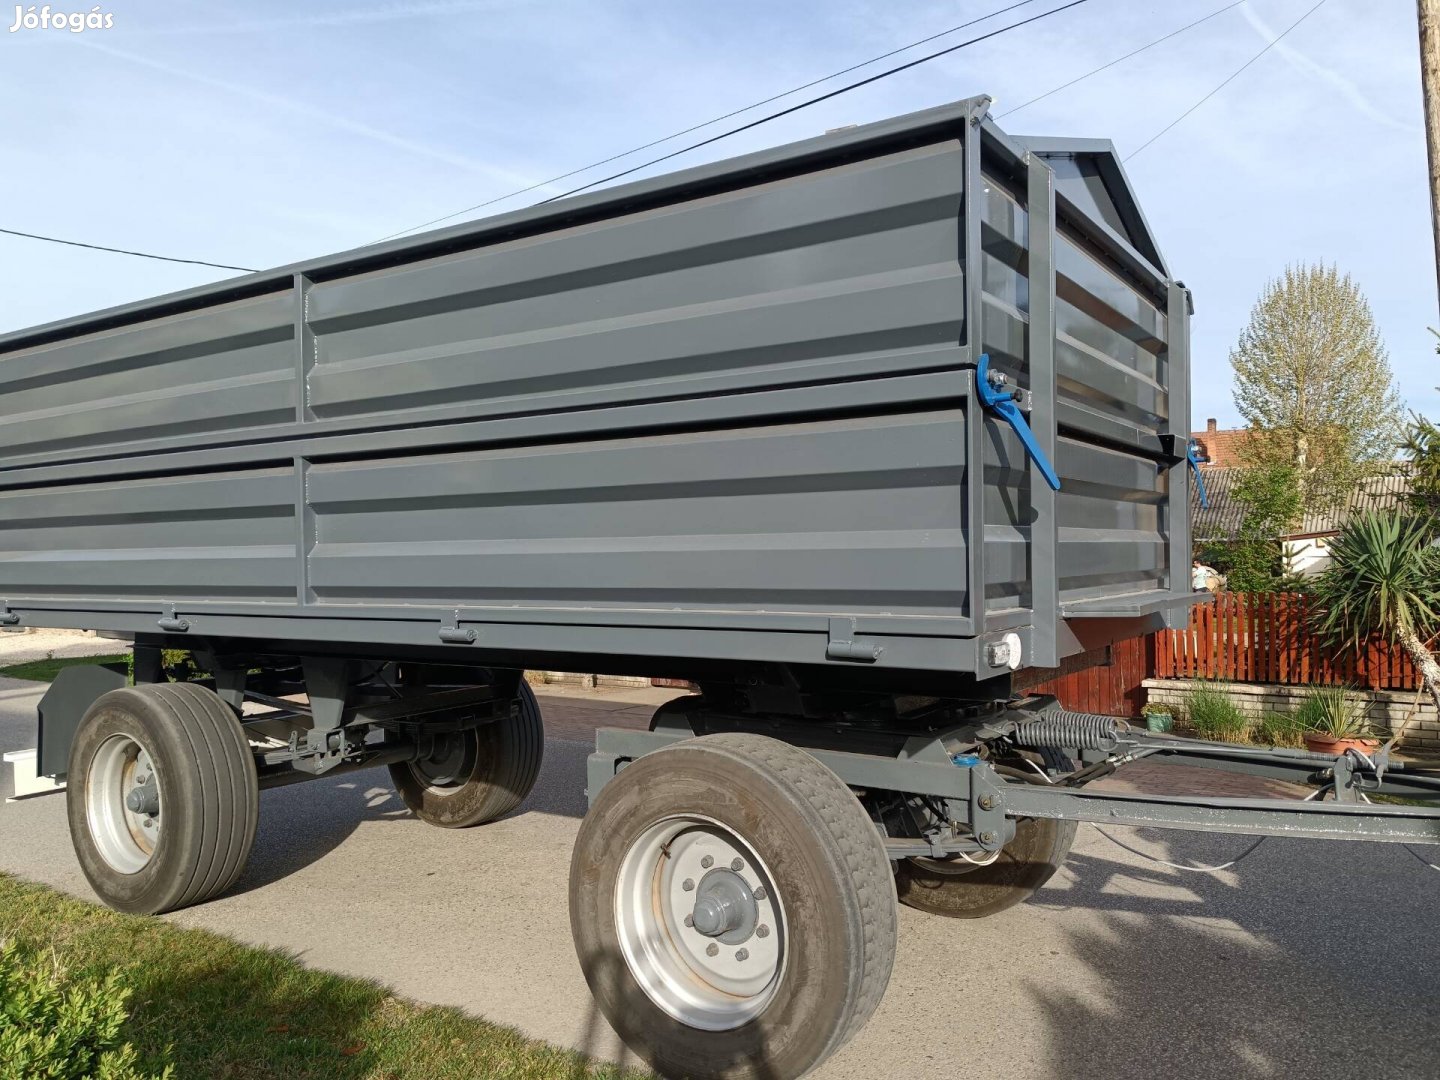 Hw 6011 pótkocsi feljavított új oldal plató kamion gumi